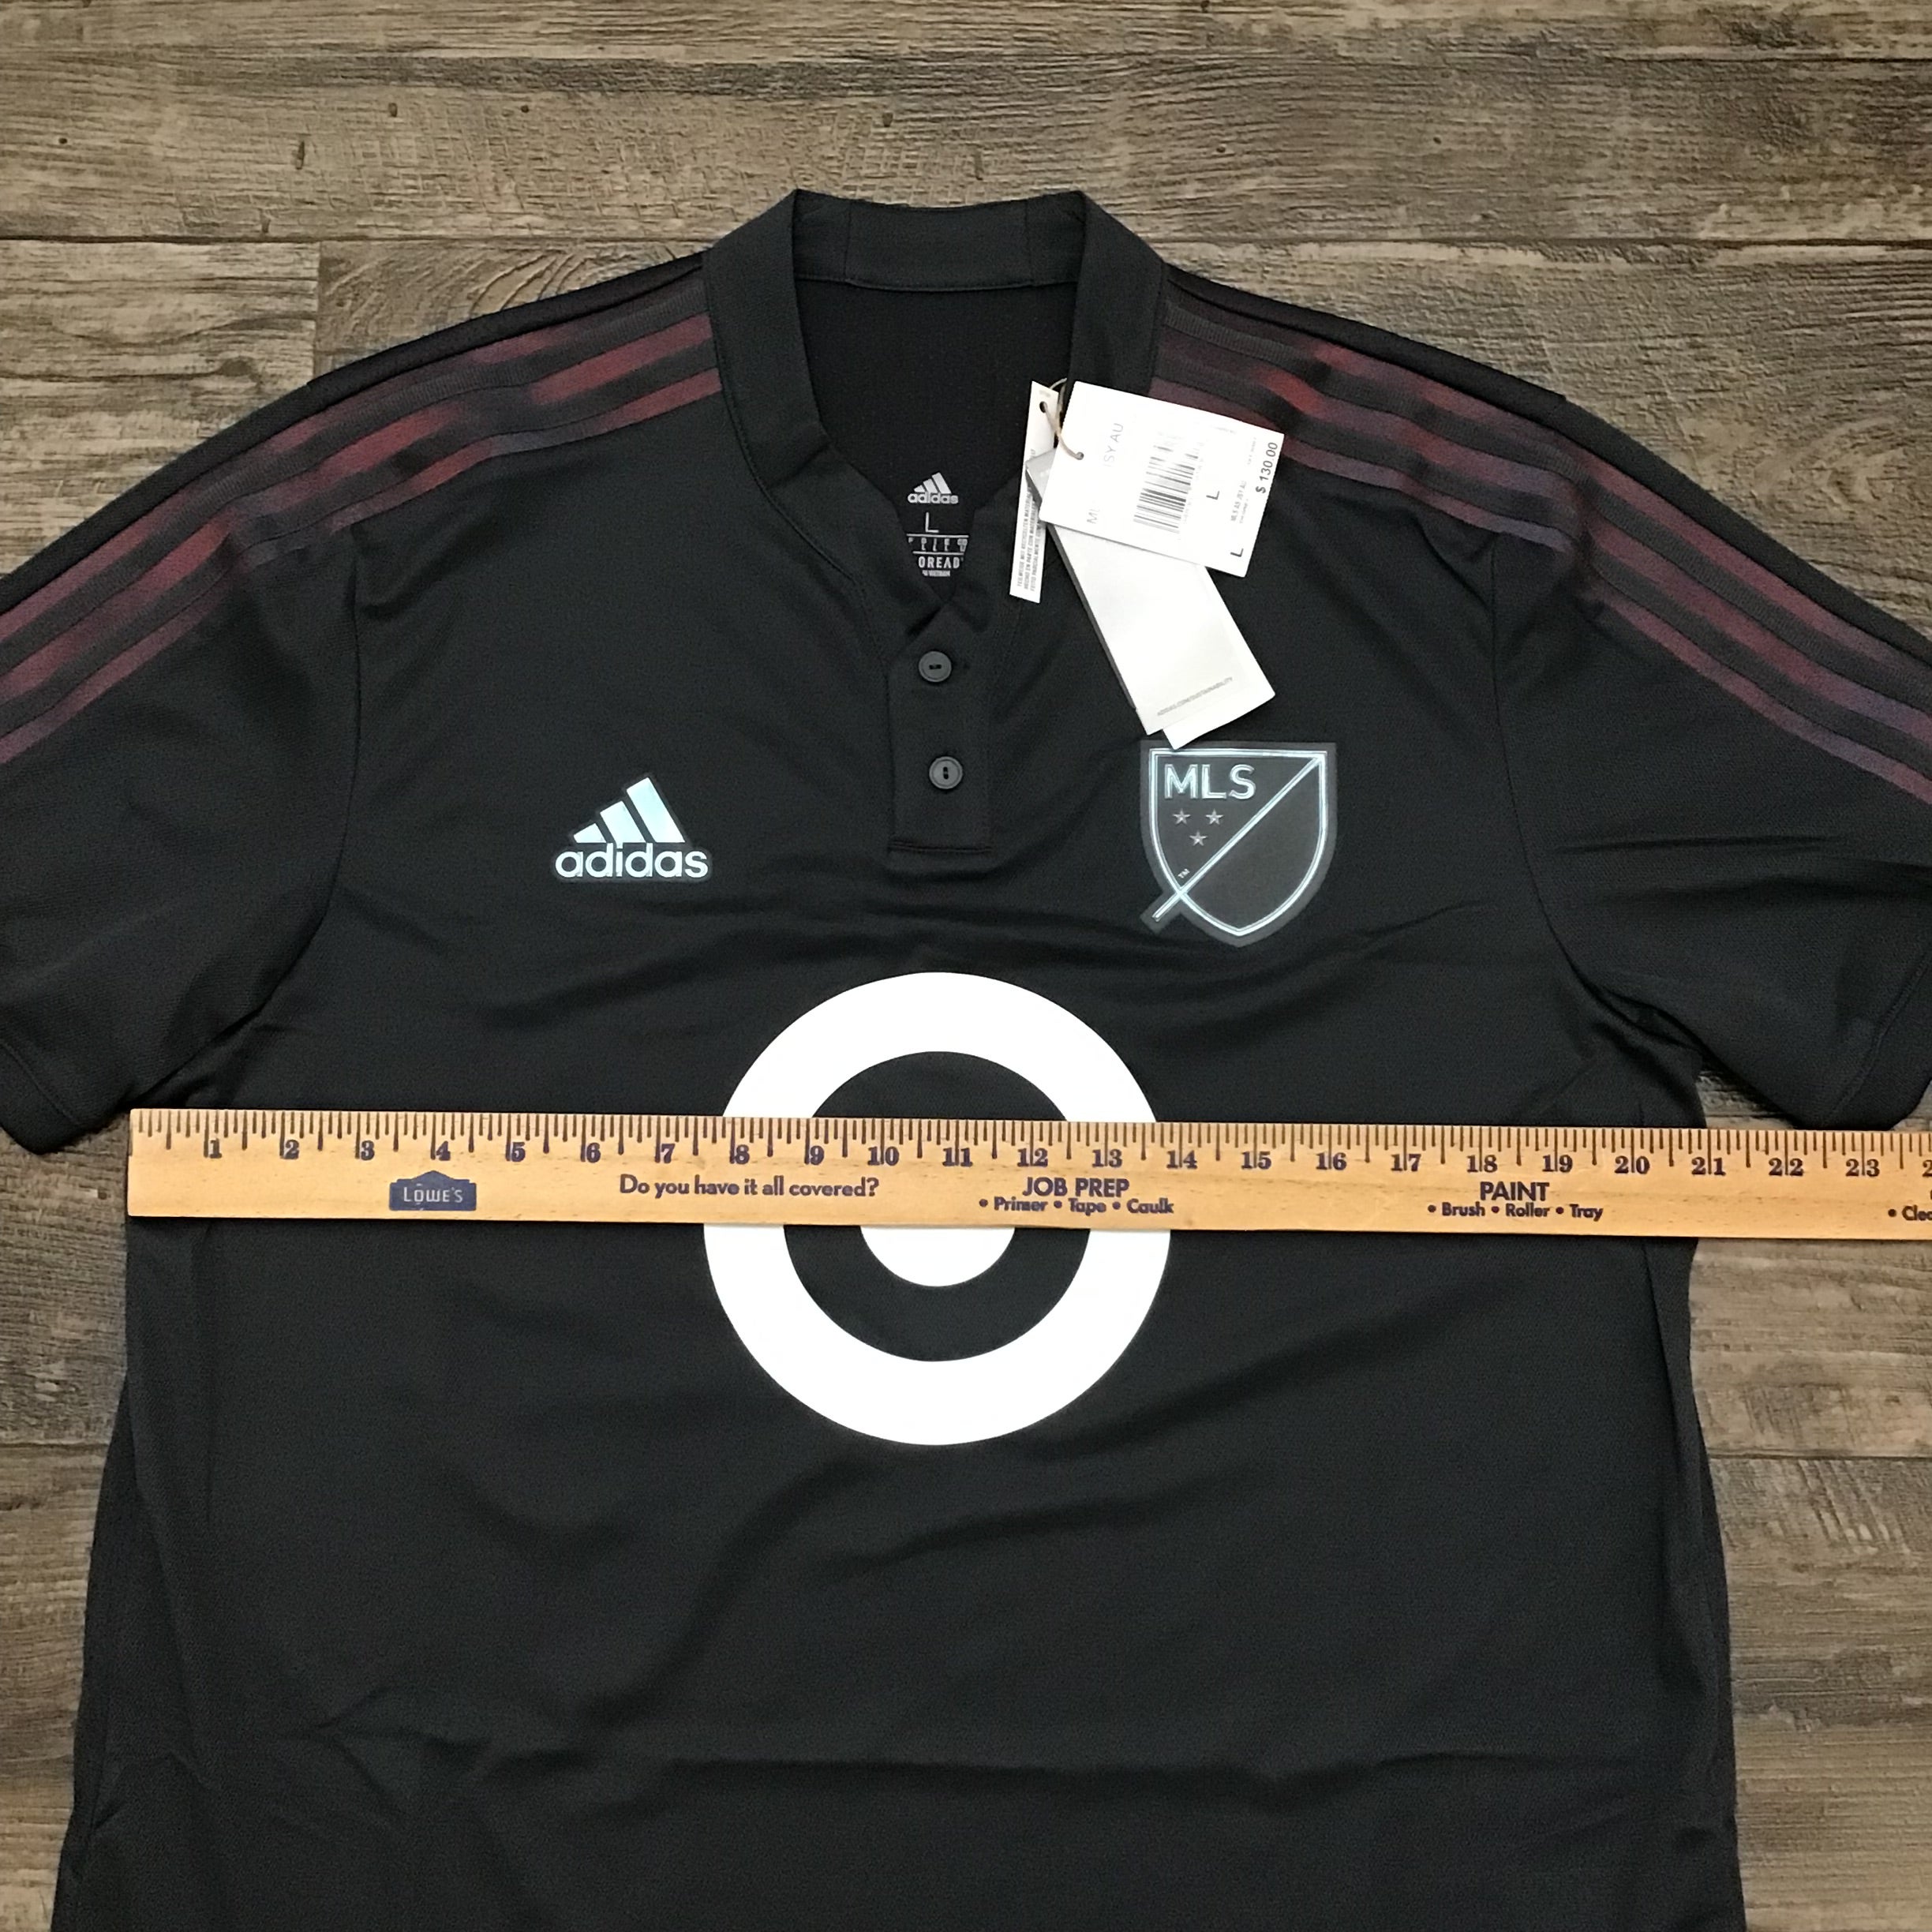 NEW!!! 2022 Adidas MLS All Star Jersey Minnesota GT3088 Men's Sz: Large